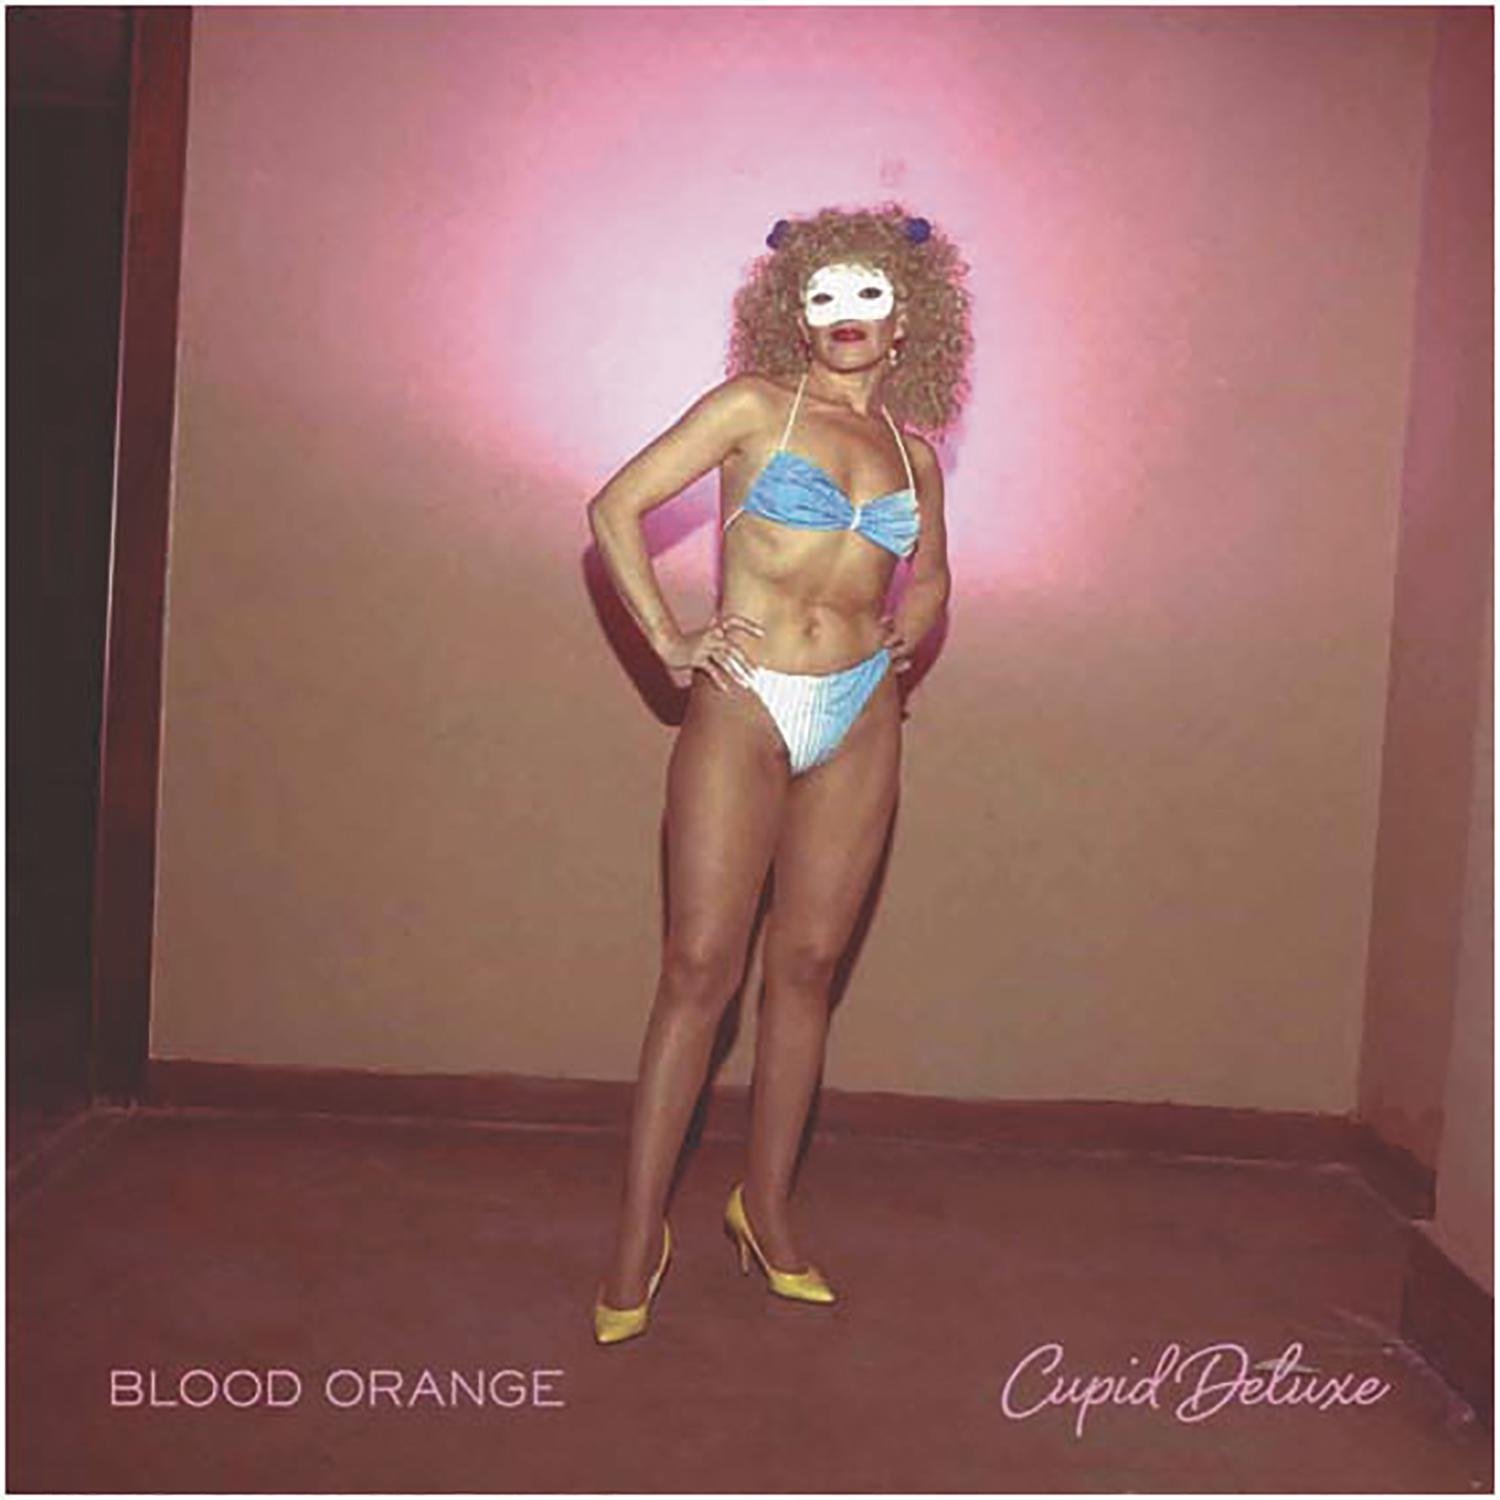 Blood Orange "Cupid Deluxe" 2LP